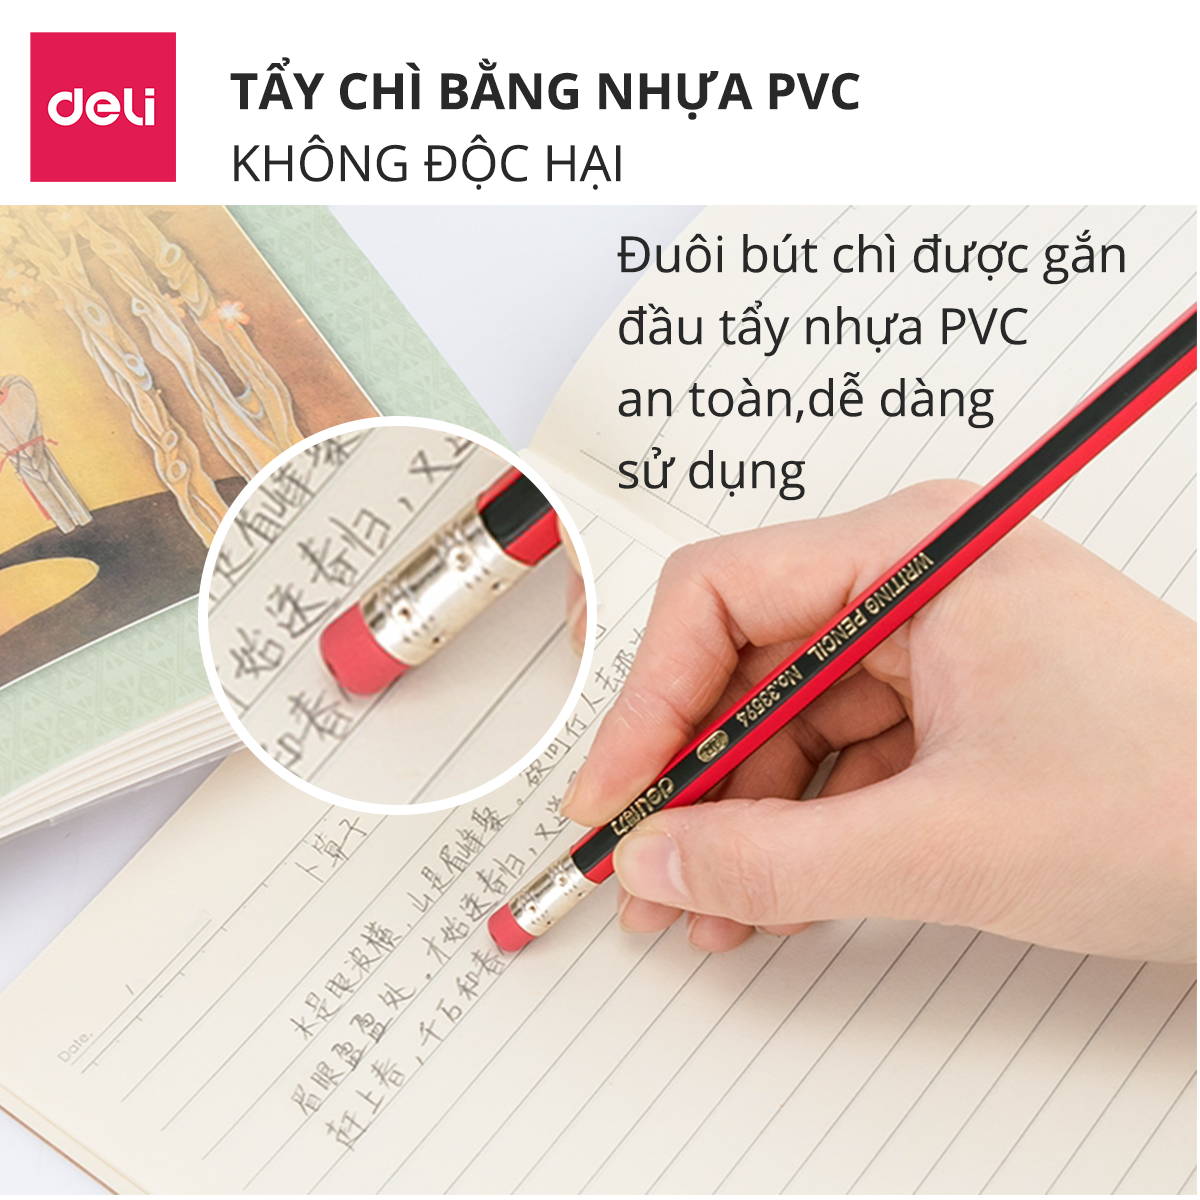 Bộ 5 bút chì gỗ 2B HB Deli - Có bán lẻ 1 chiếc - Nhiều loại mẫu mã màu sắc - Phù hợp cho học sinh sinh viên tập viết vẽ tranh